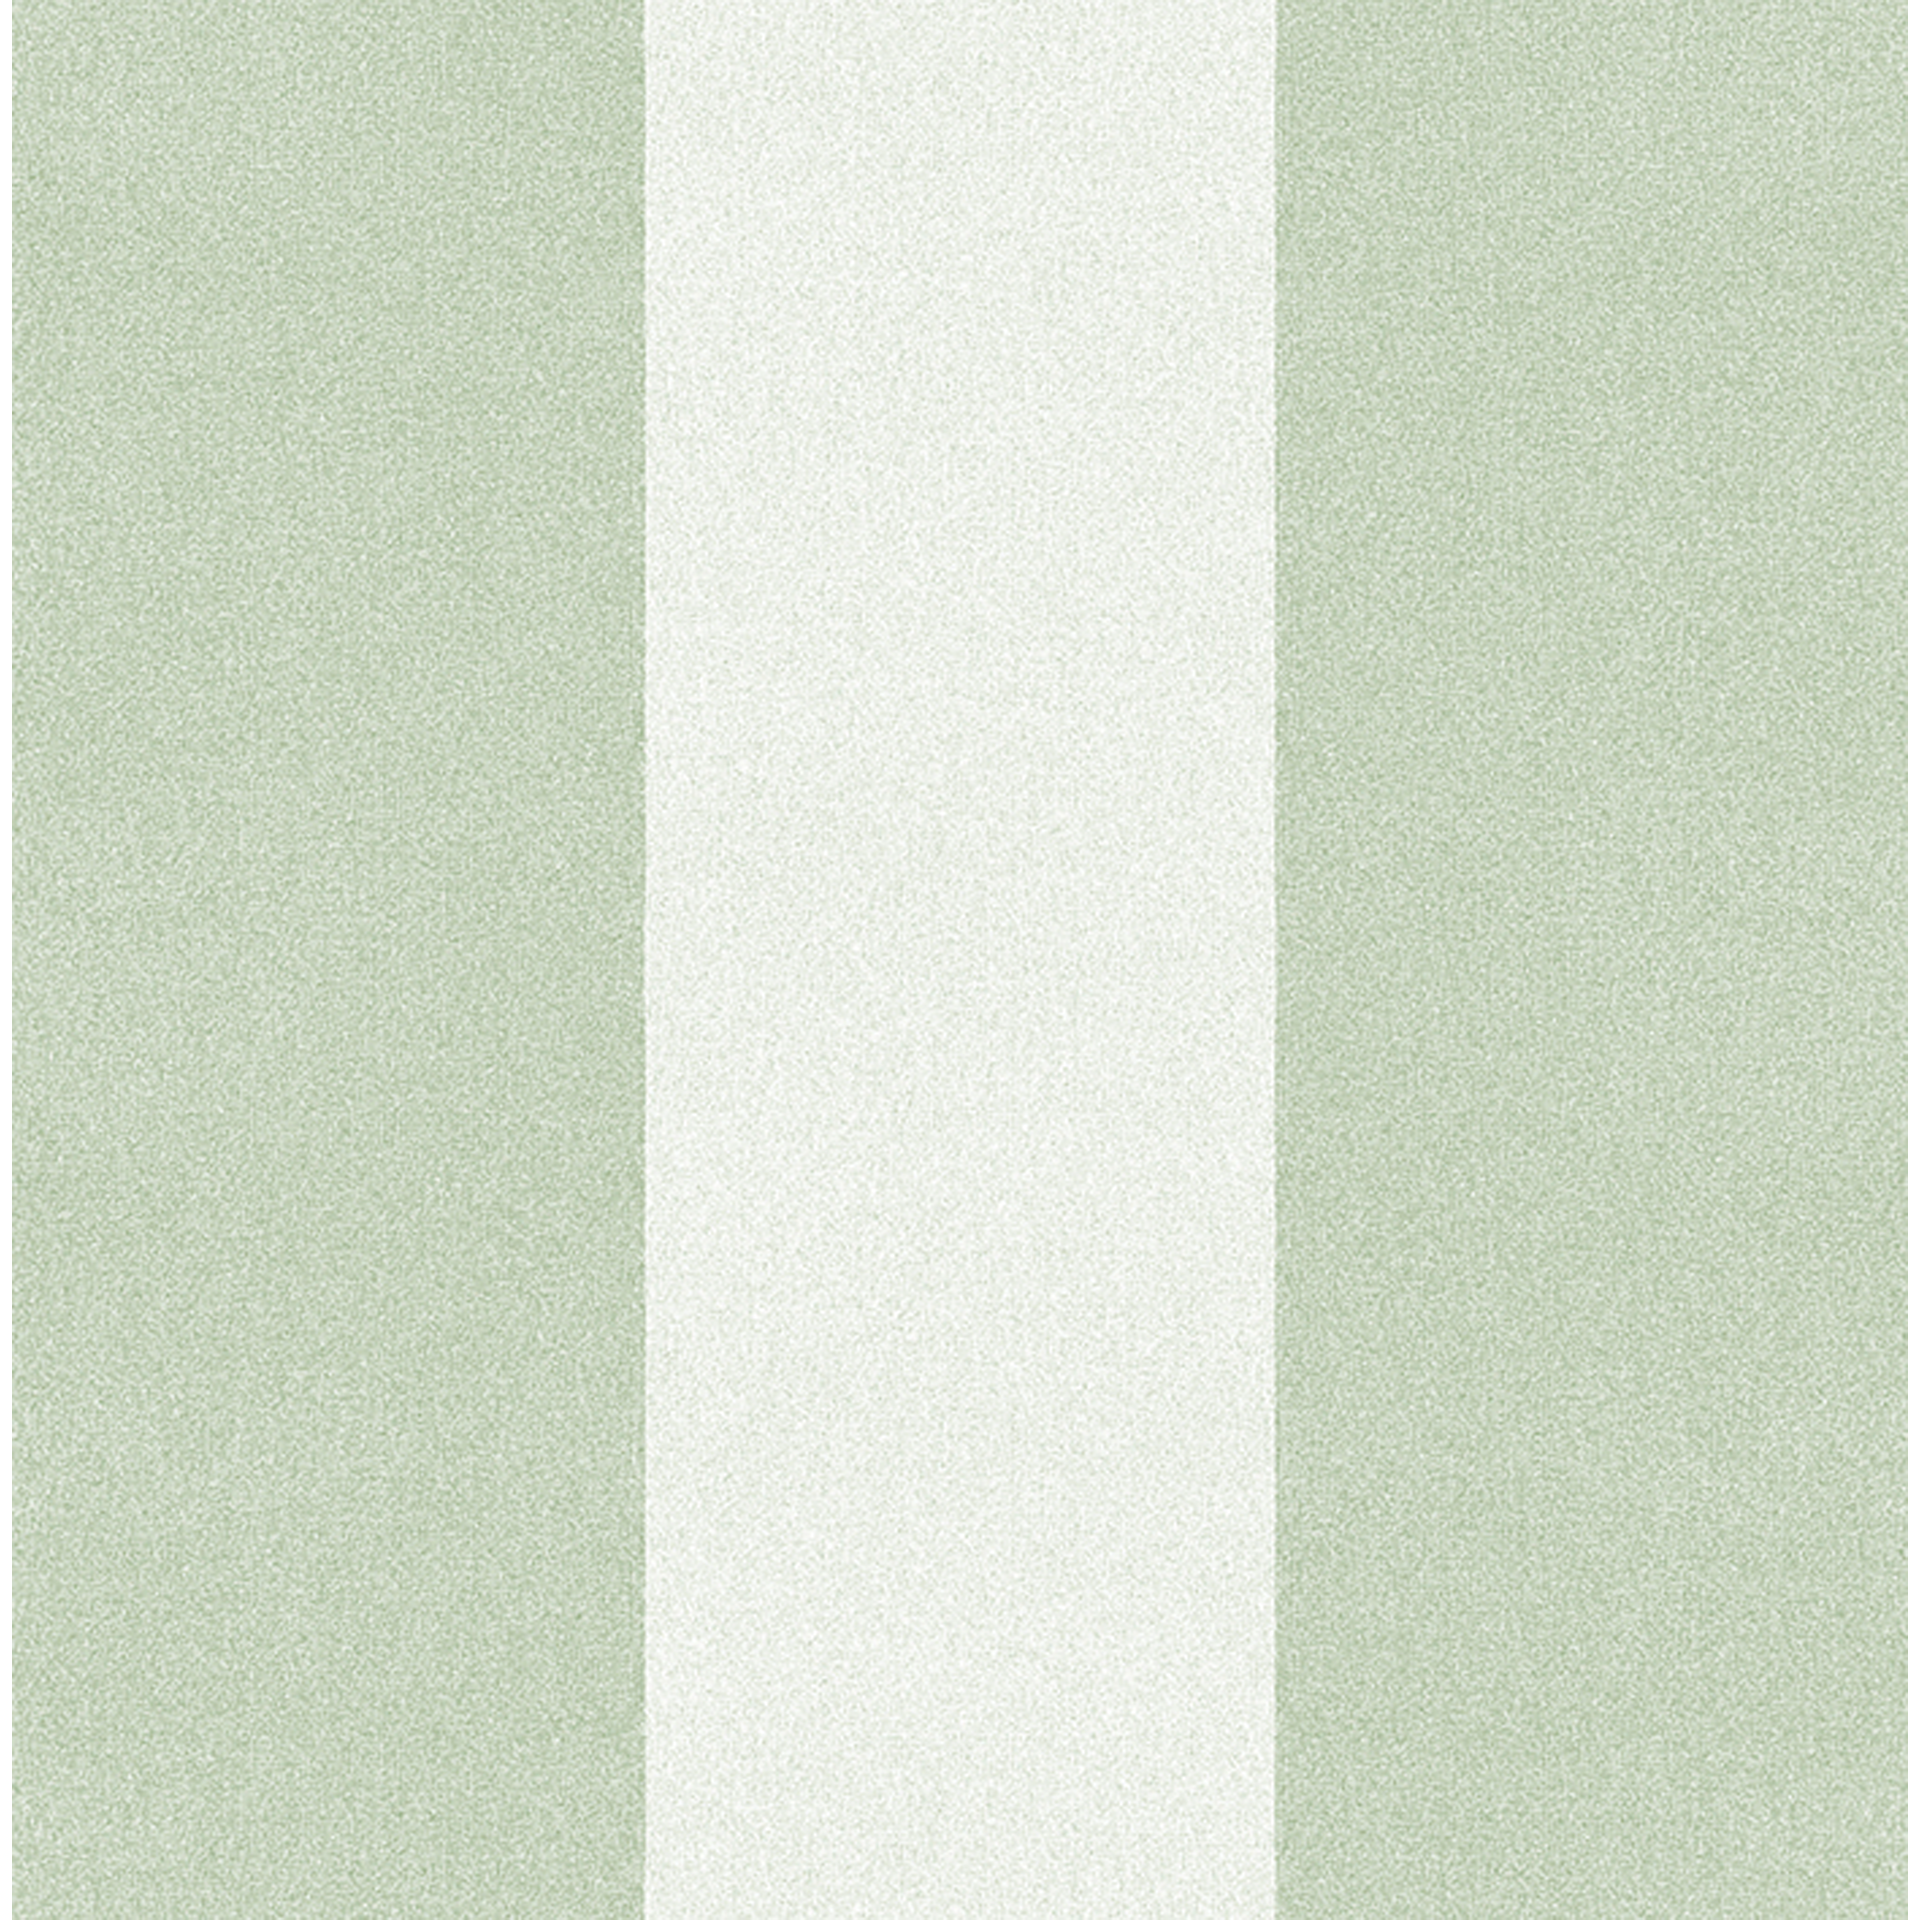 Aufleger | Varenna Airlaid | grün 100x100 cm 